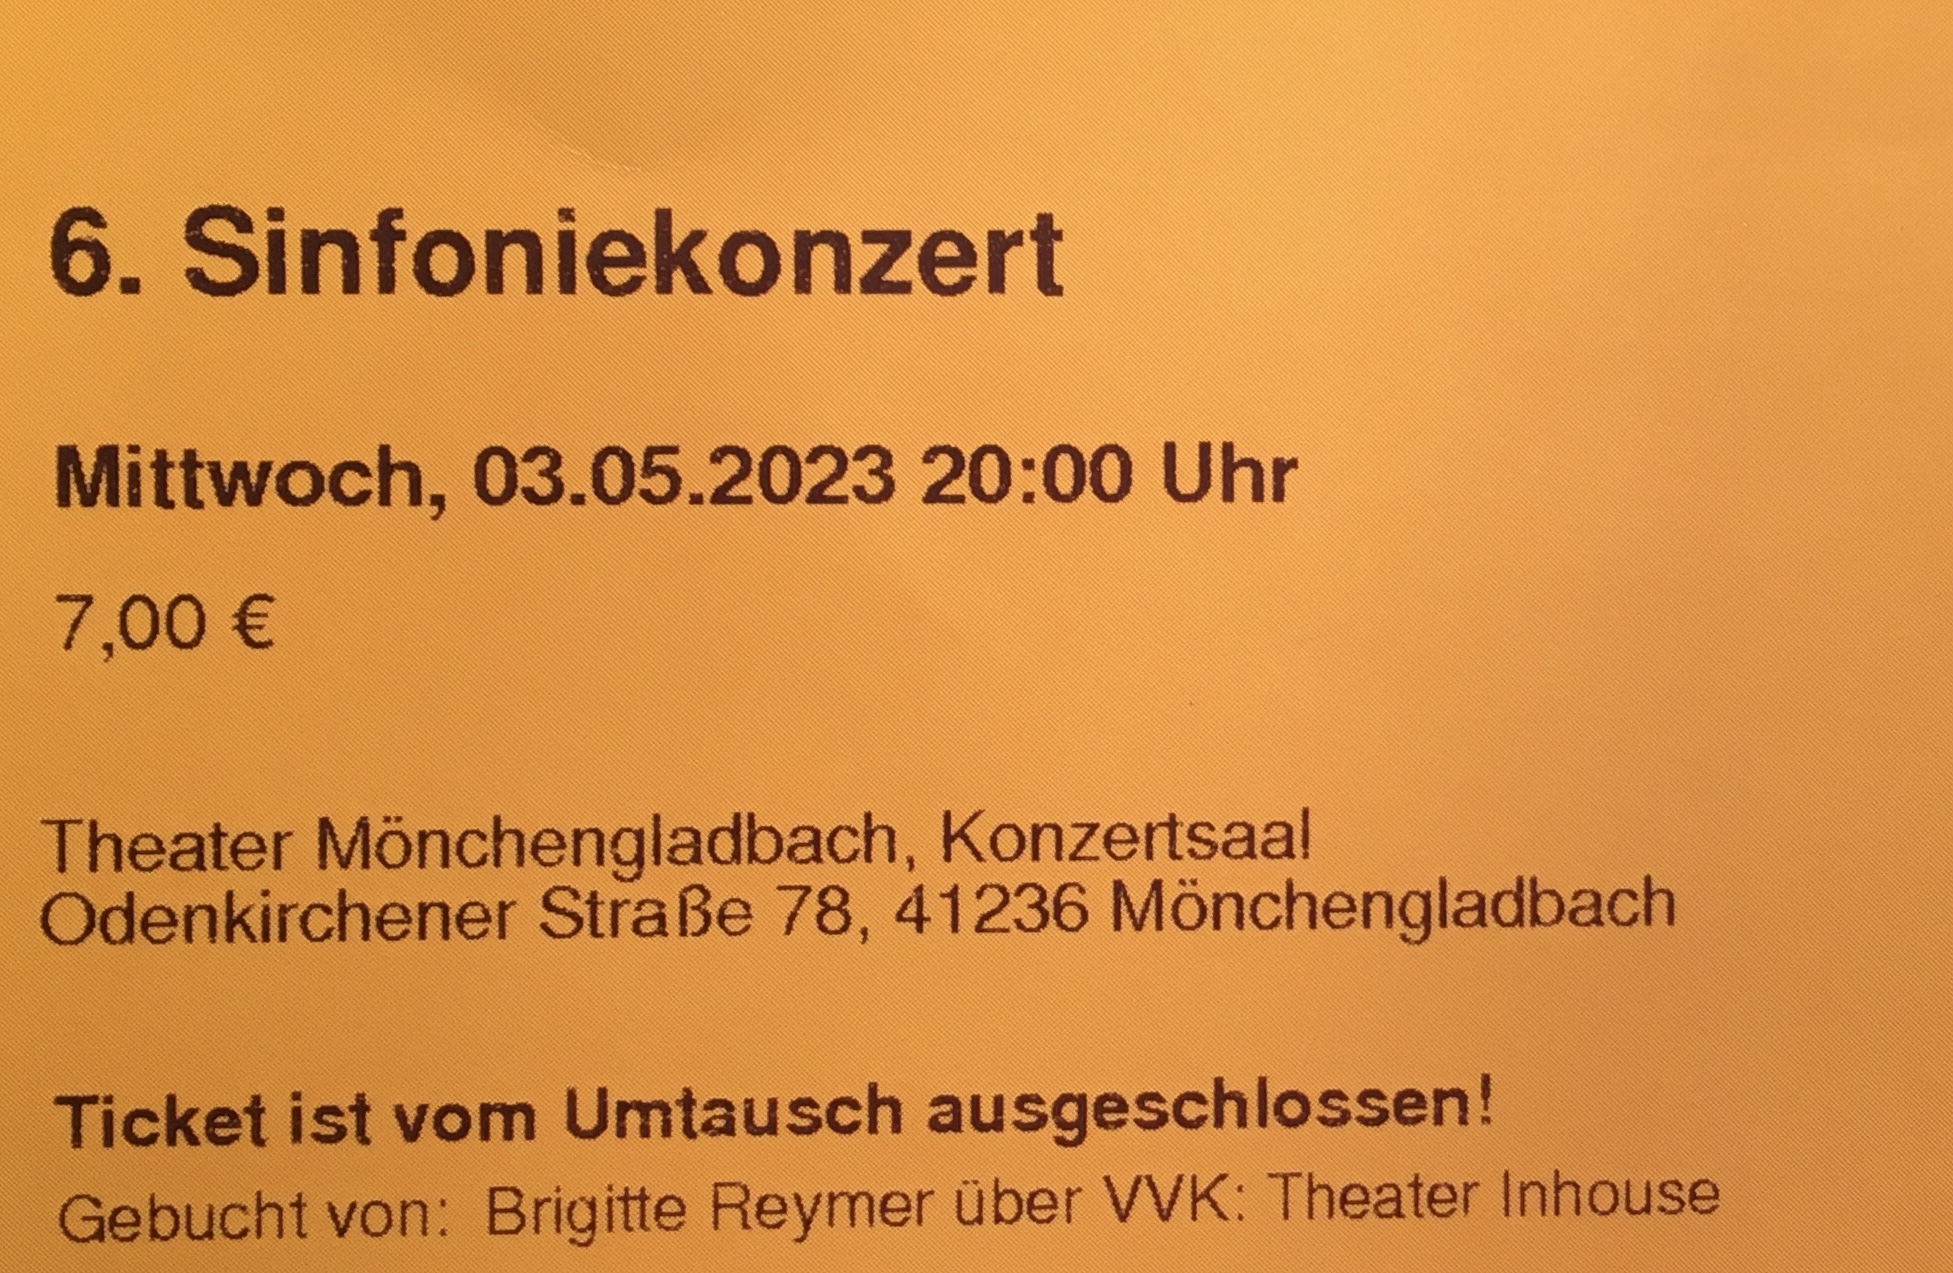 Sinfoniekonzert 2023 (c) Bischöfliches Gymnasium St. Ursula Geilenkirchen (Brigitte Reymer)